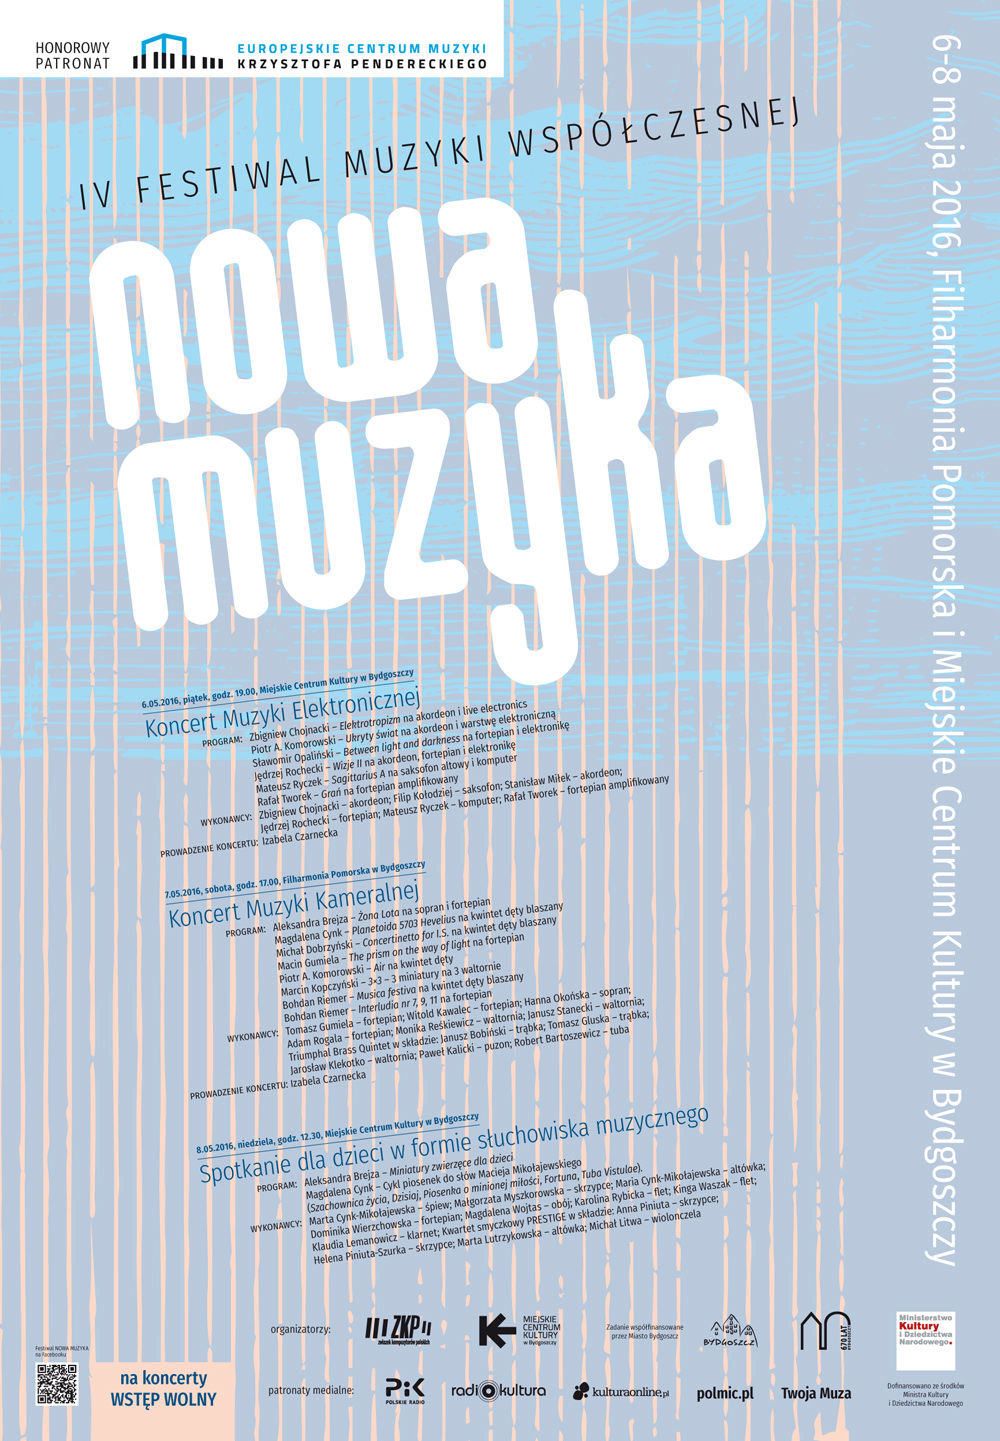 IV Festiwal Muzyki Współczesnej NOWA MUZYKA 2016 w Bydgoszczy